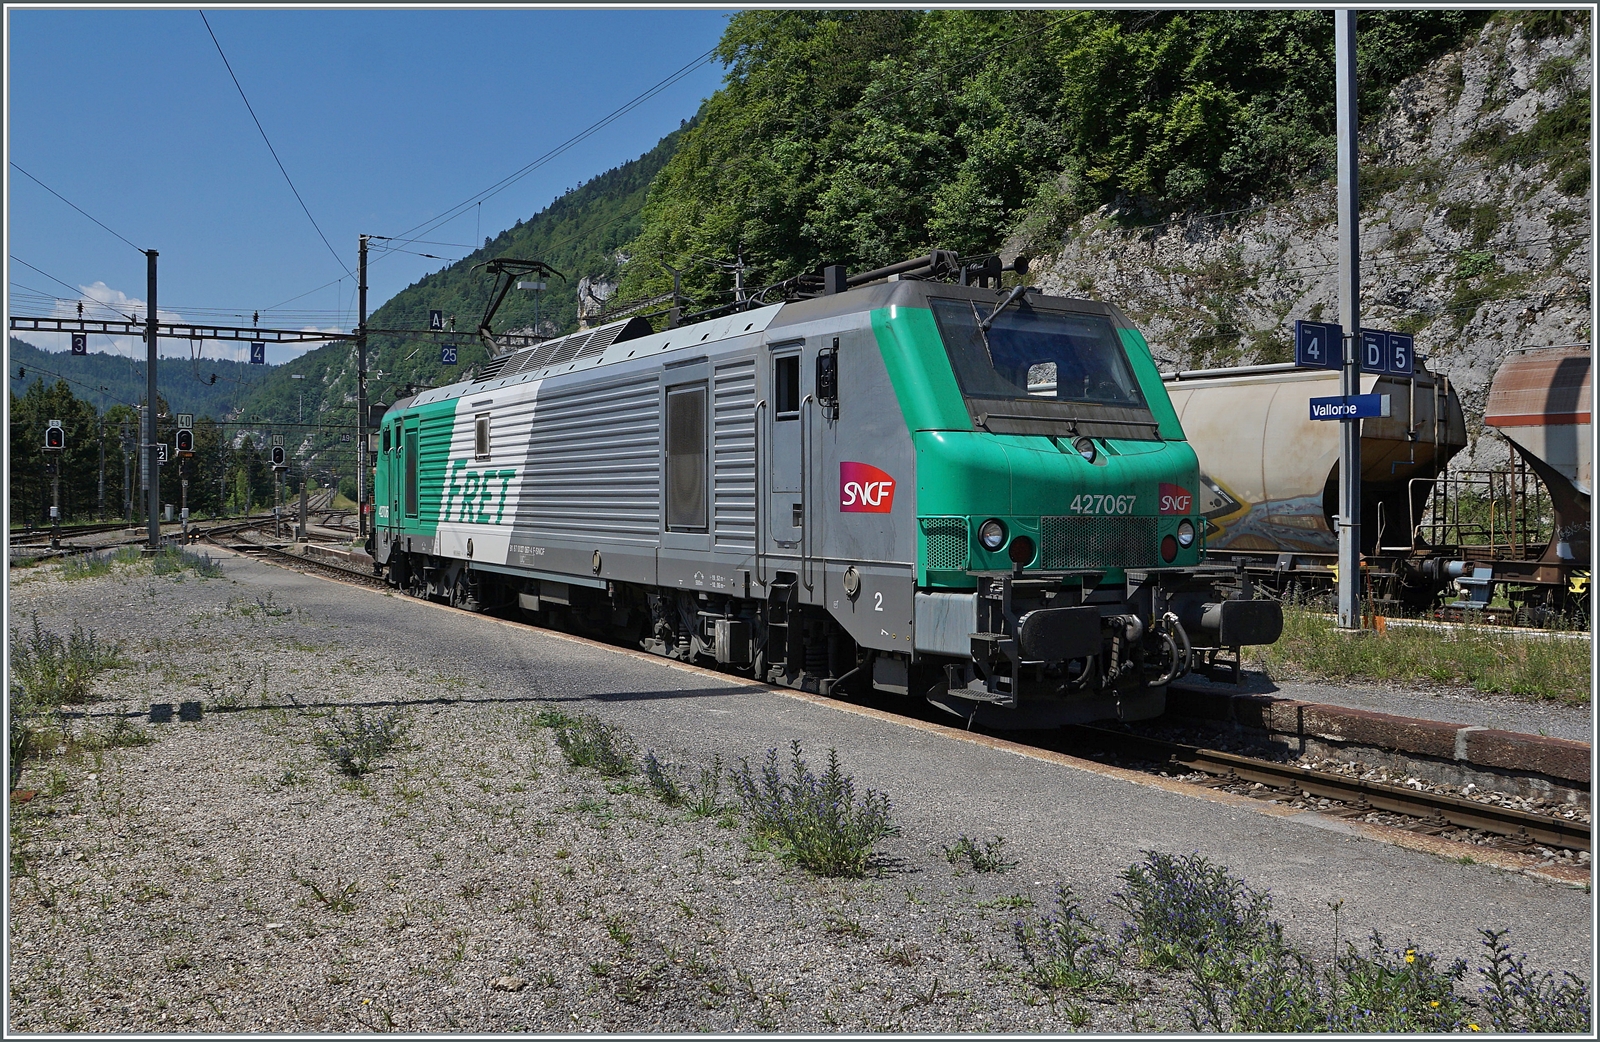 Die SNCF BB 27067 hat den im Hintergrund zu sehenden  Spaghetti -Zug nachgeschoben und macht sich nun bereit in Vallorbe den Gegenzug zu übernehmen. 

16. Juni 2022